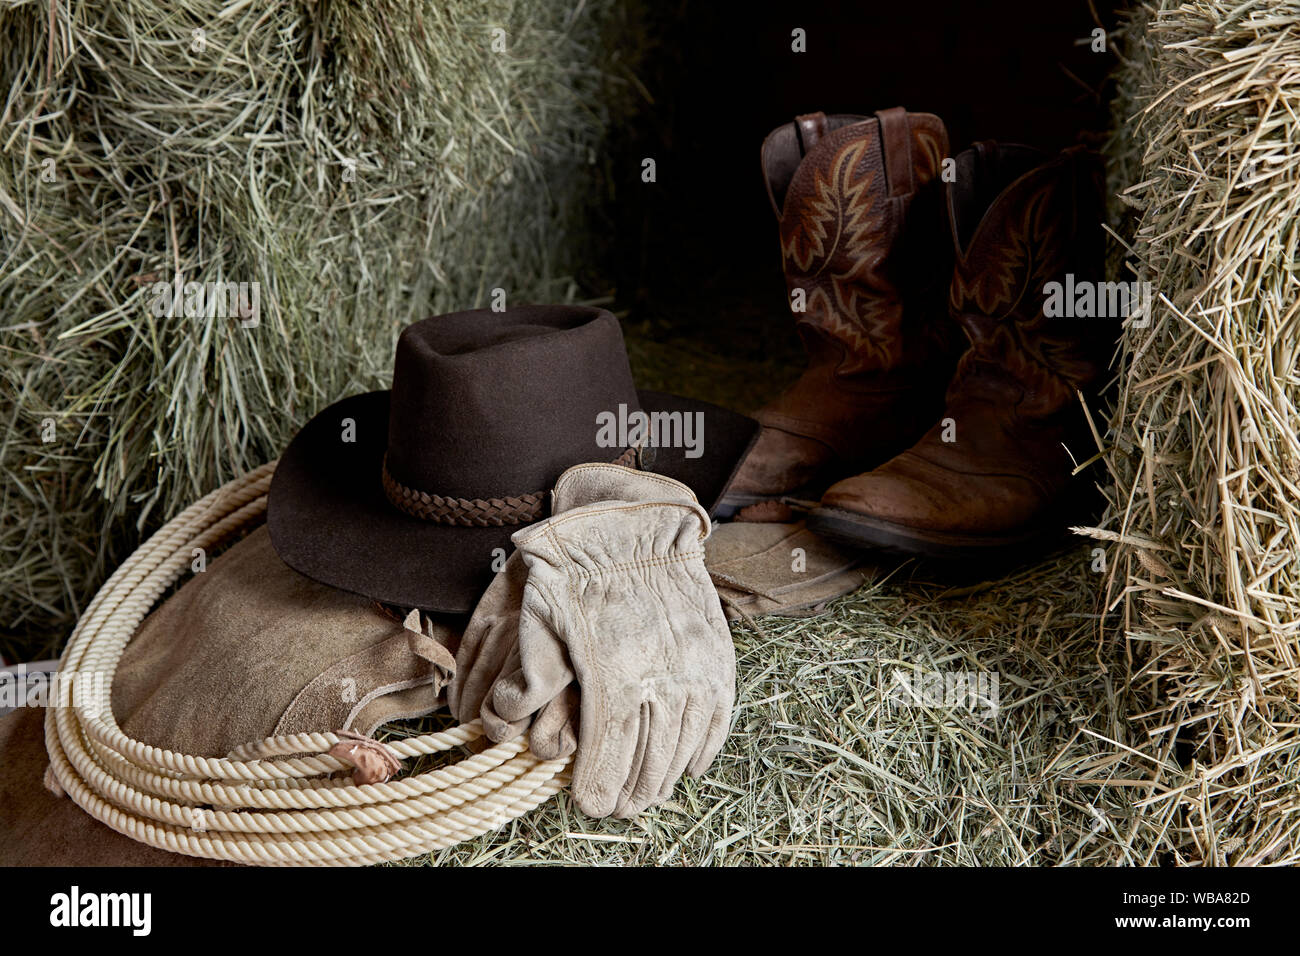 Chapeau de Cowboy de l'ouest avec des gants en cuir, bottes de cow-boy et  bottes, et une corde de roper sur le foin dans une grange Photo Stock -  Alamy